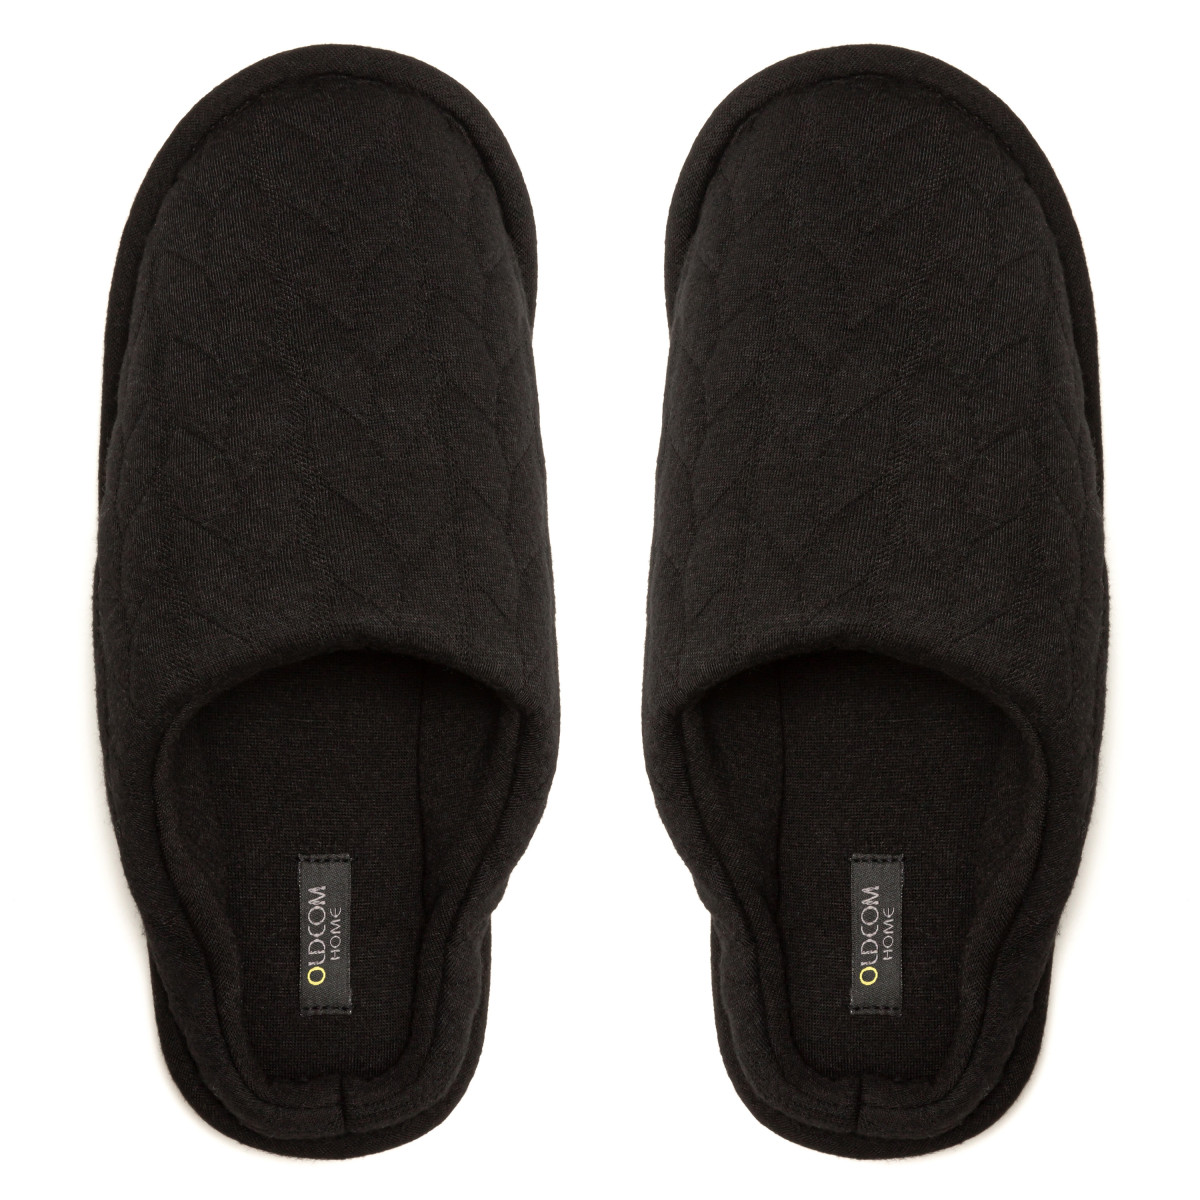 Women's Home slippers FAMILY, Black